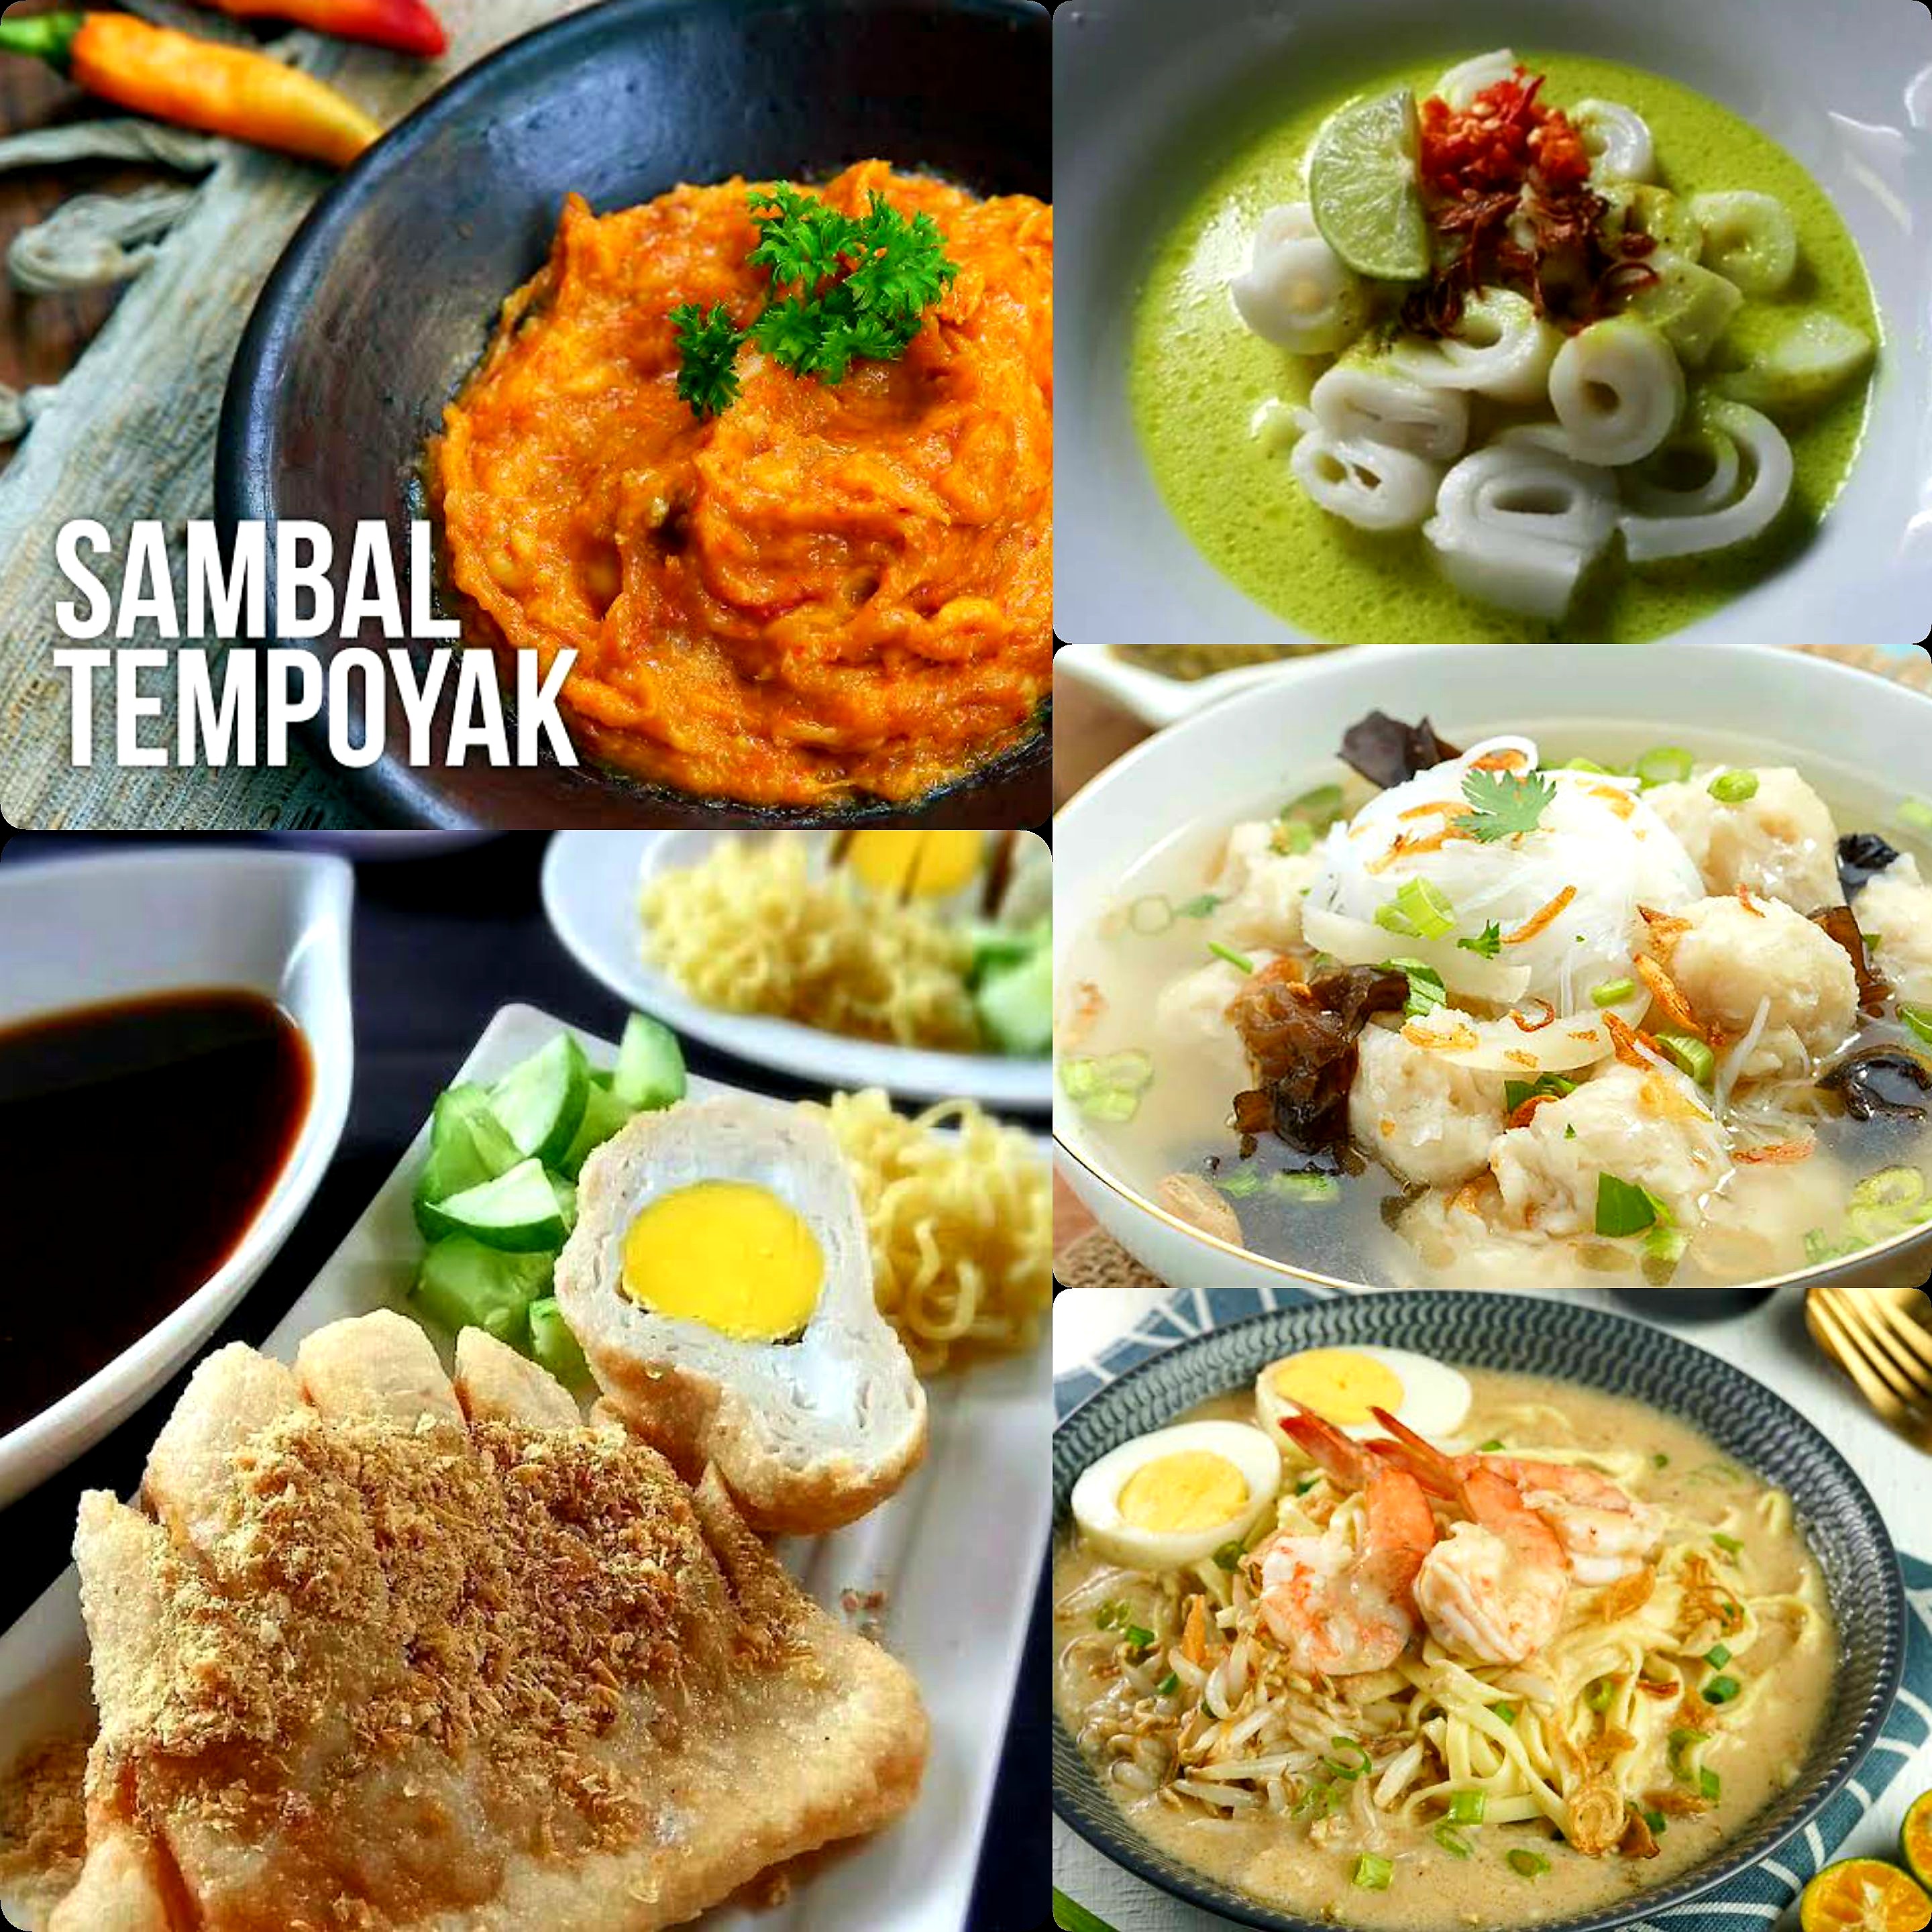 Jangan Cuma Bisa Makan. Ternyata Ada Kisah Dibalik Nama Kuliner Khas Sumatera Selatan Ini